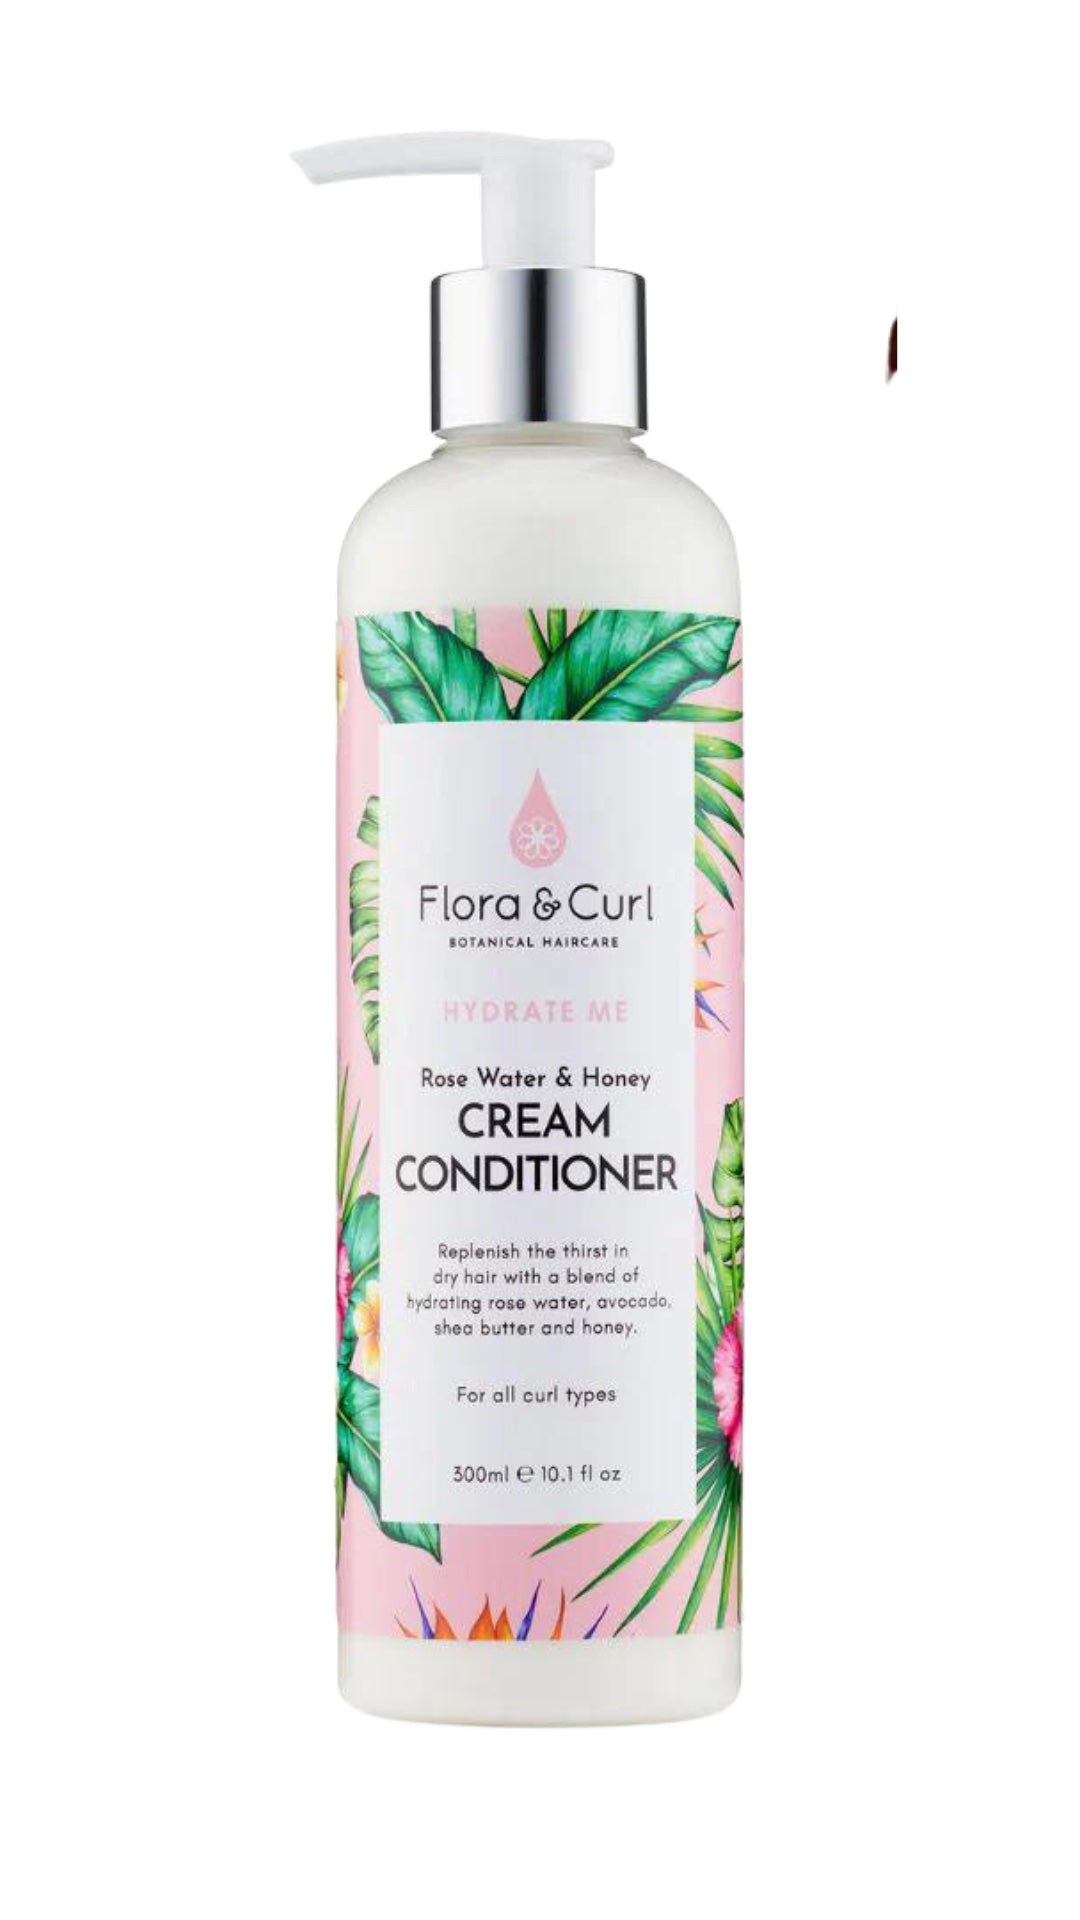 FLORA & CURL - Rose Water & Honey Cream Conditioner